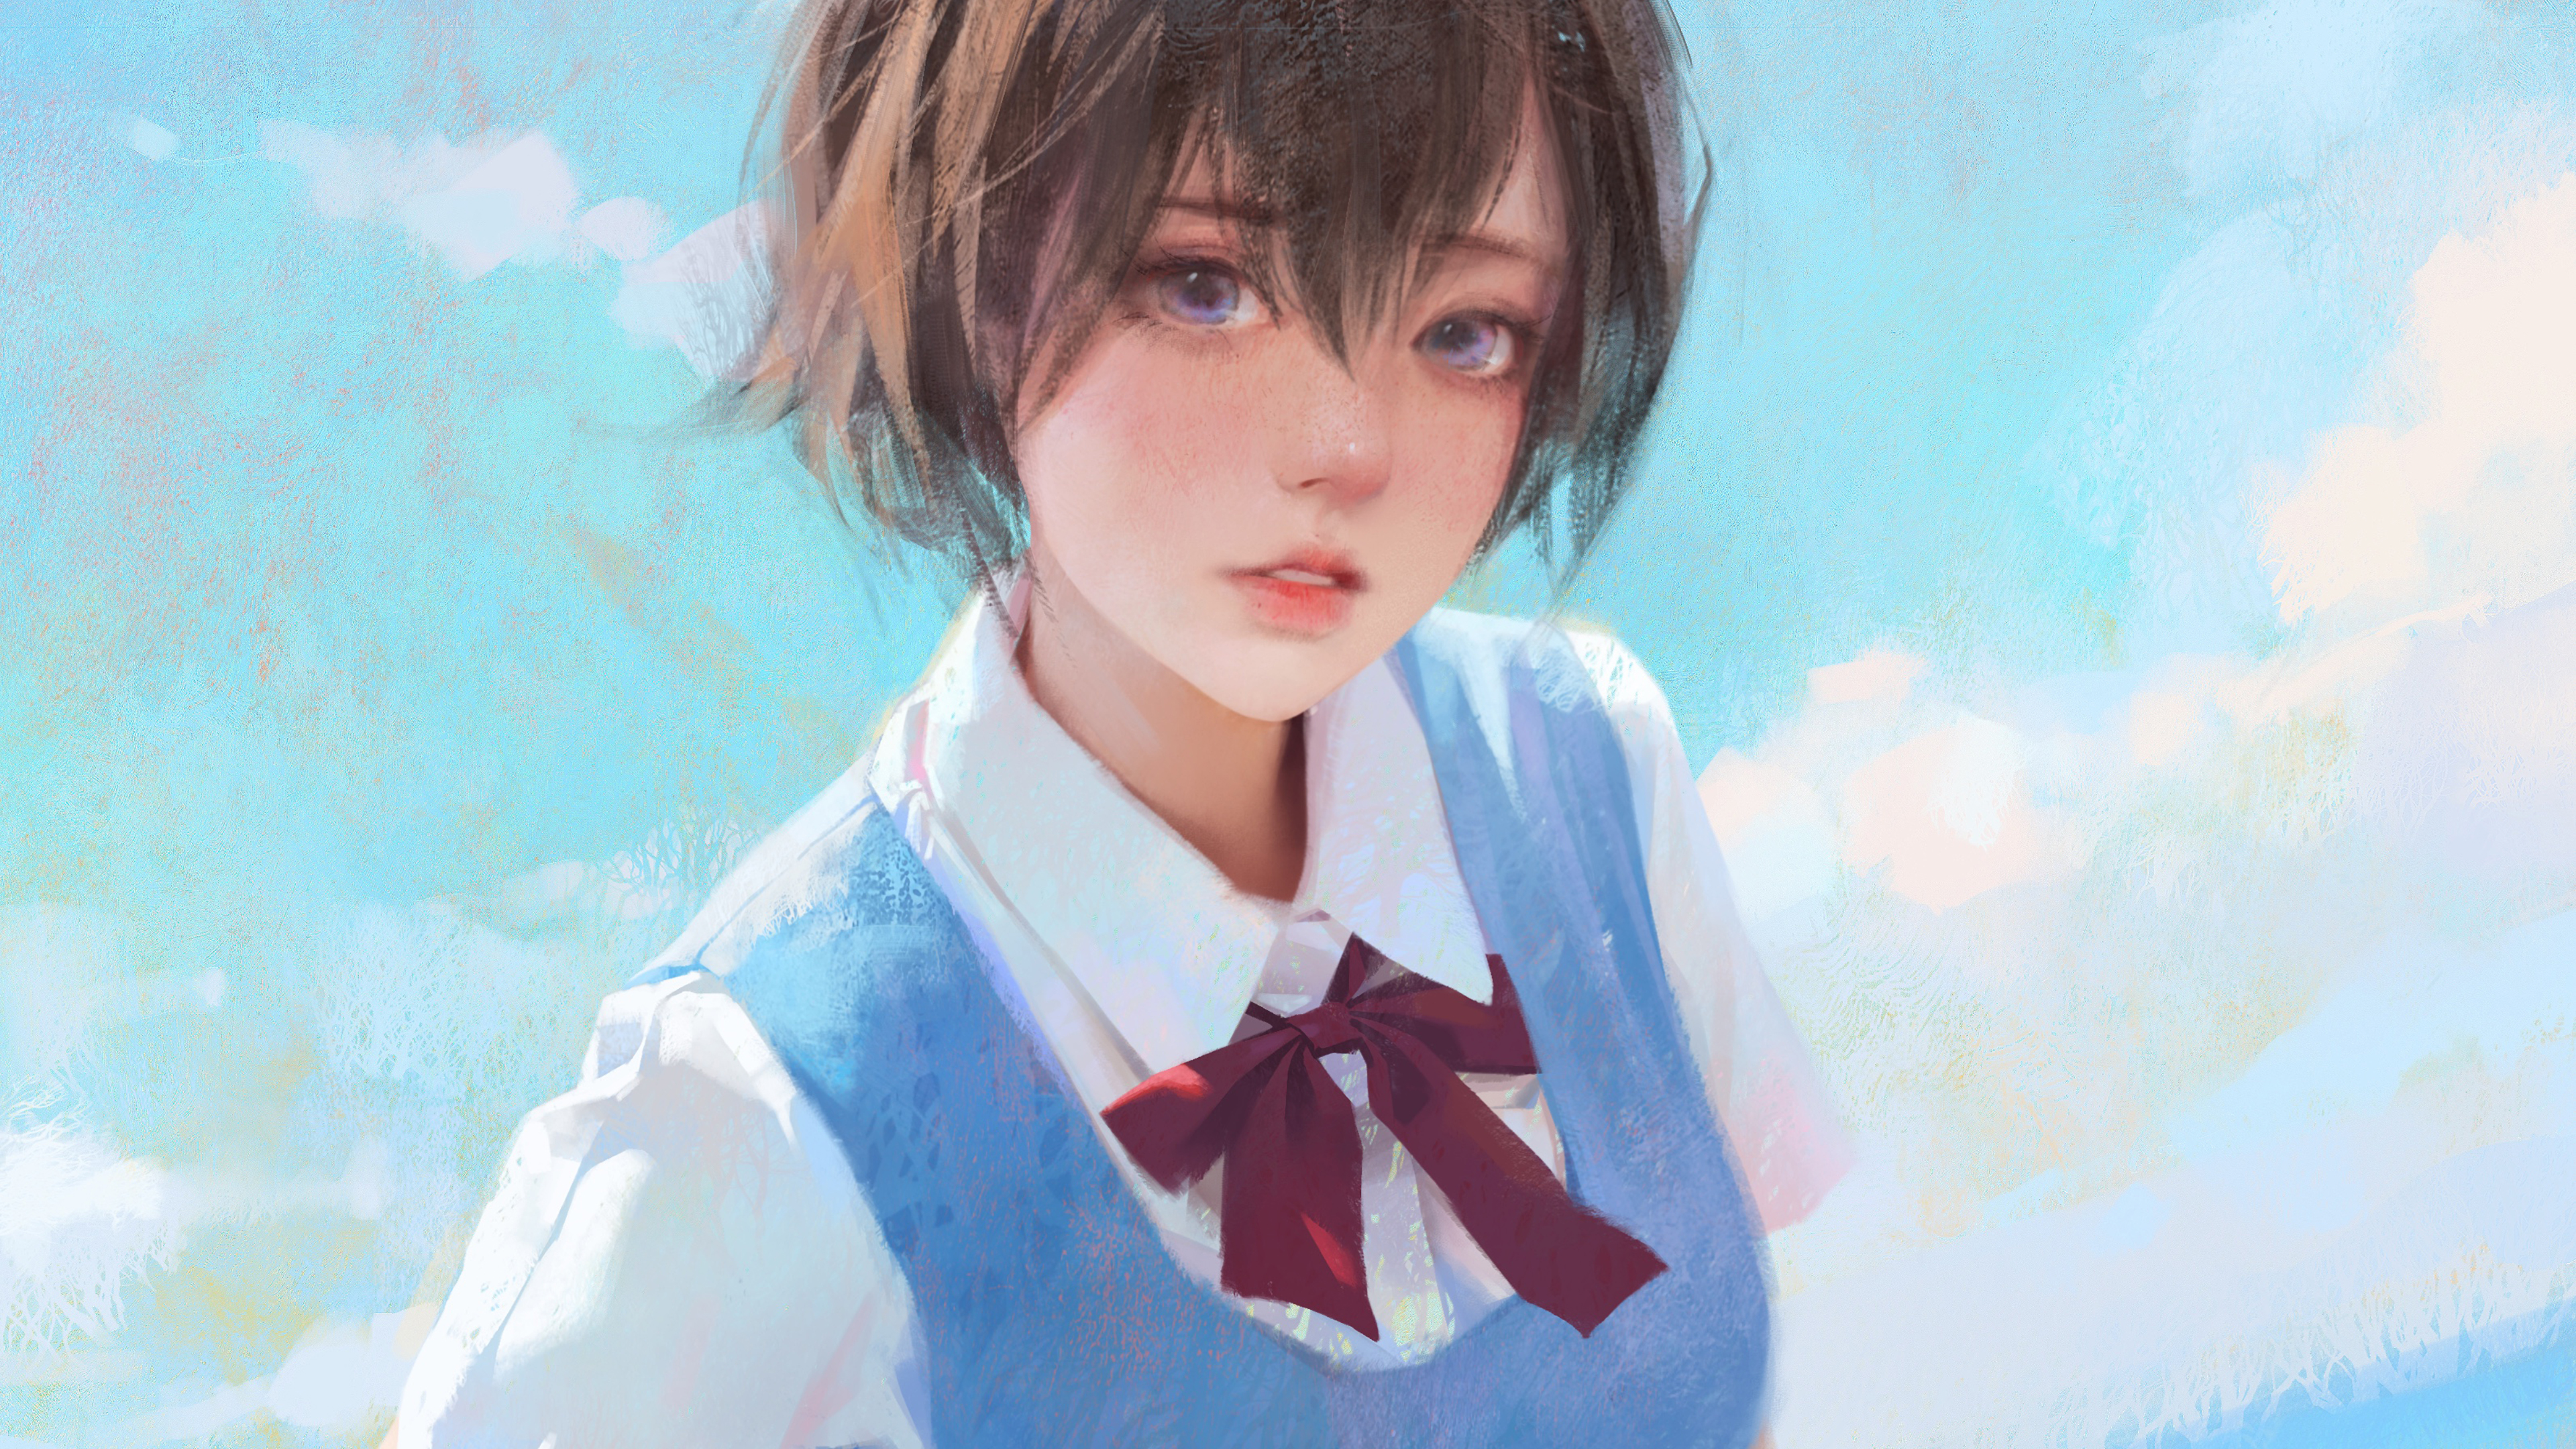 Short Hair Anime Girls Looking At Viewer Artwork Digital Art Tie Oil Painting Sky Blue Uniform 3840x2160